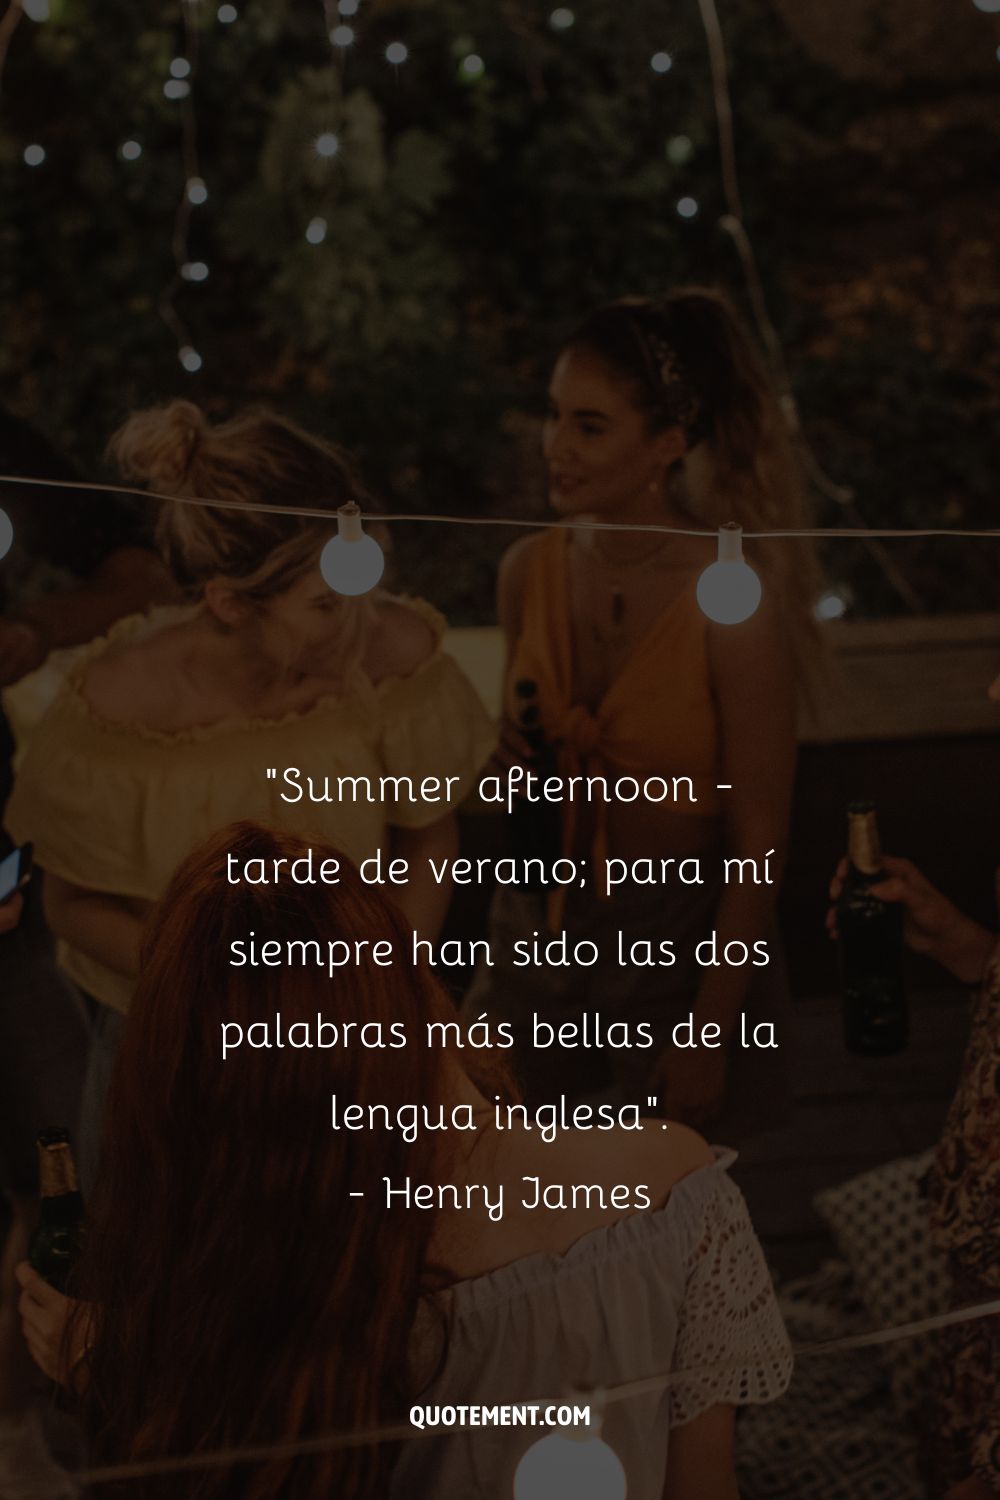 Summer afternoon - tarde de verano; para mí siempre han sido las dos palabras más bellas de la lengua inglesa. - Henry James